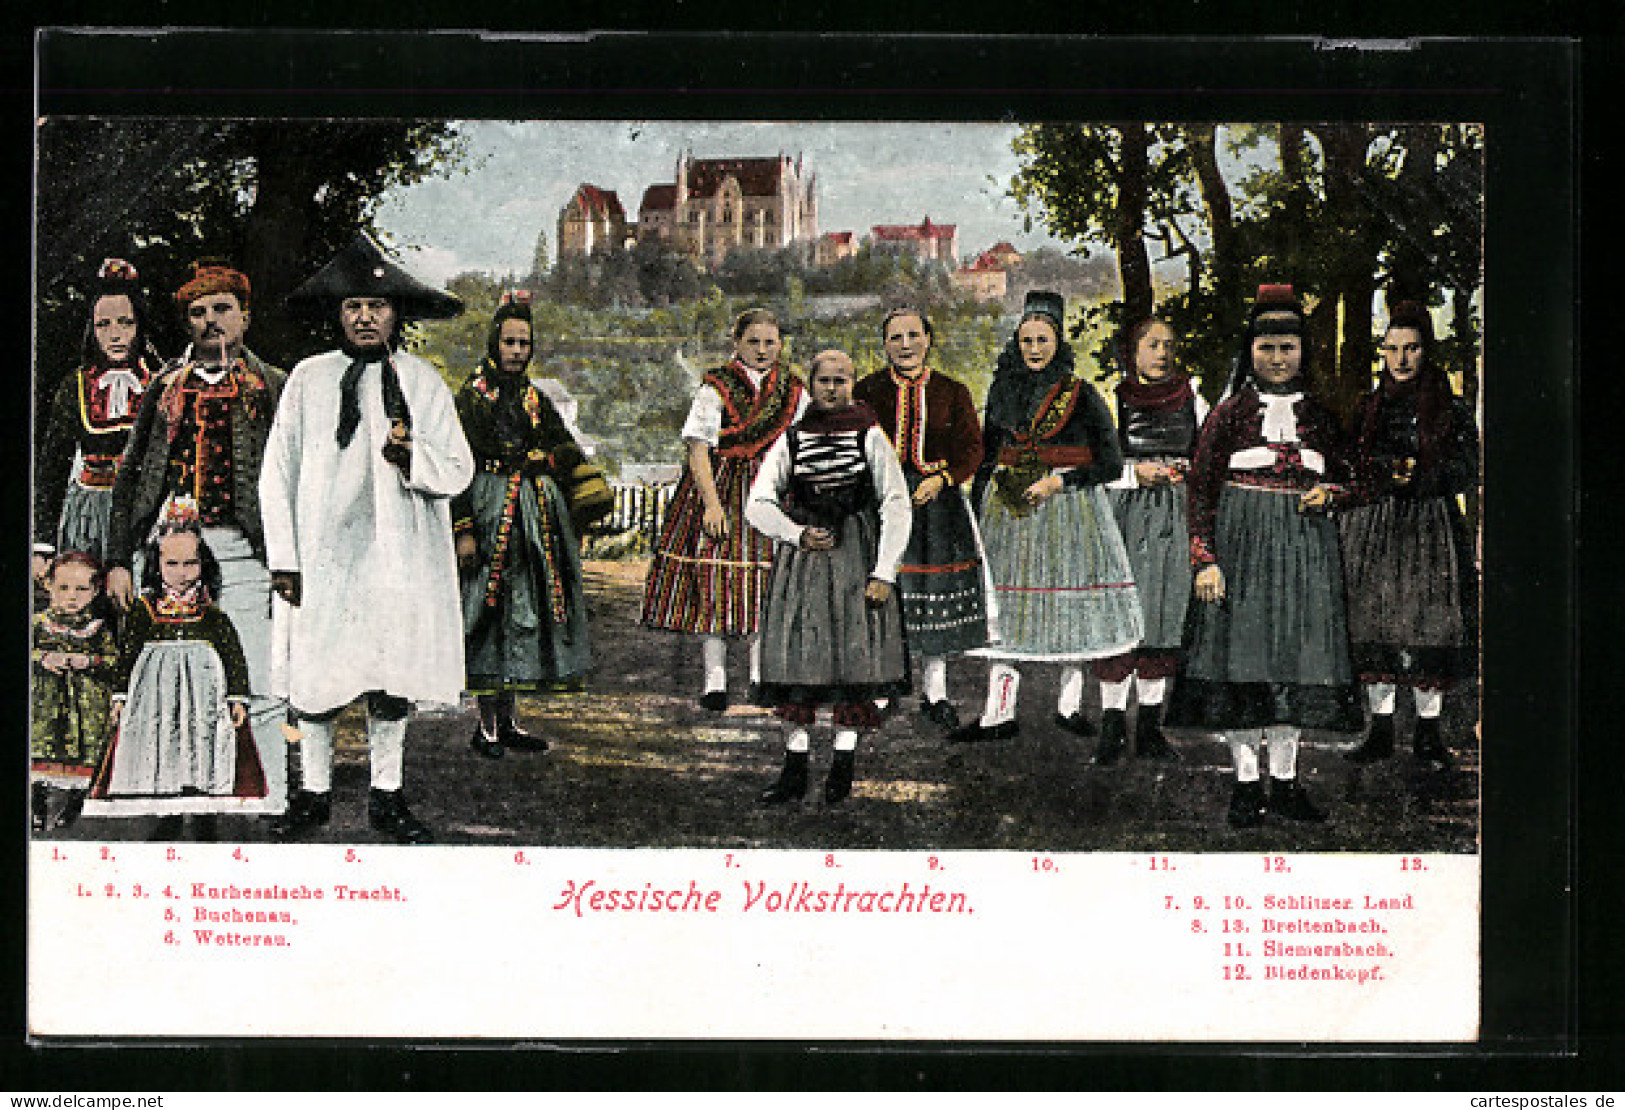 AK Hessische Volkstrachten, Kurhessische Tracht, Buchenau, Wetterau  - Costumes